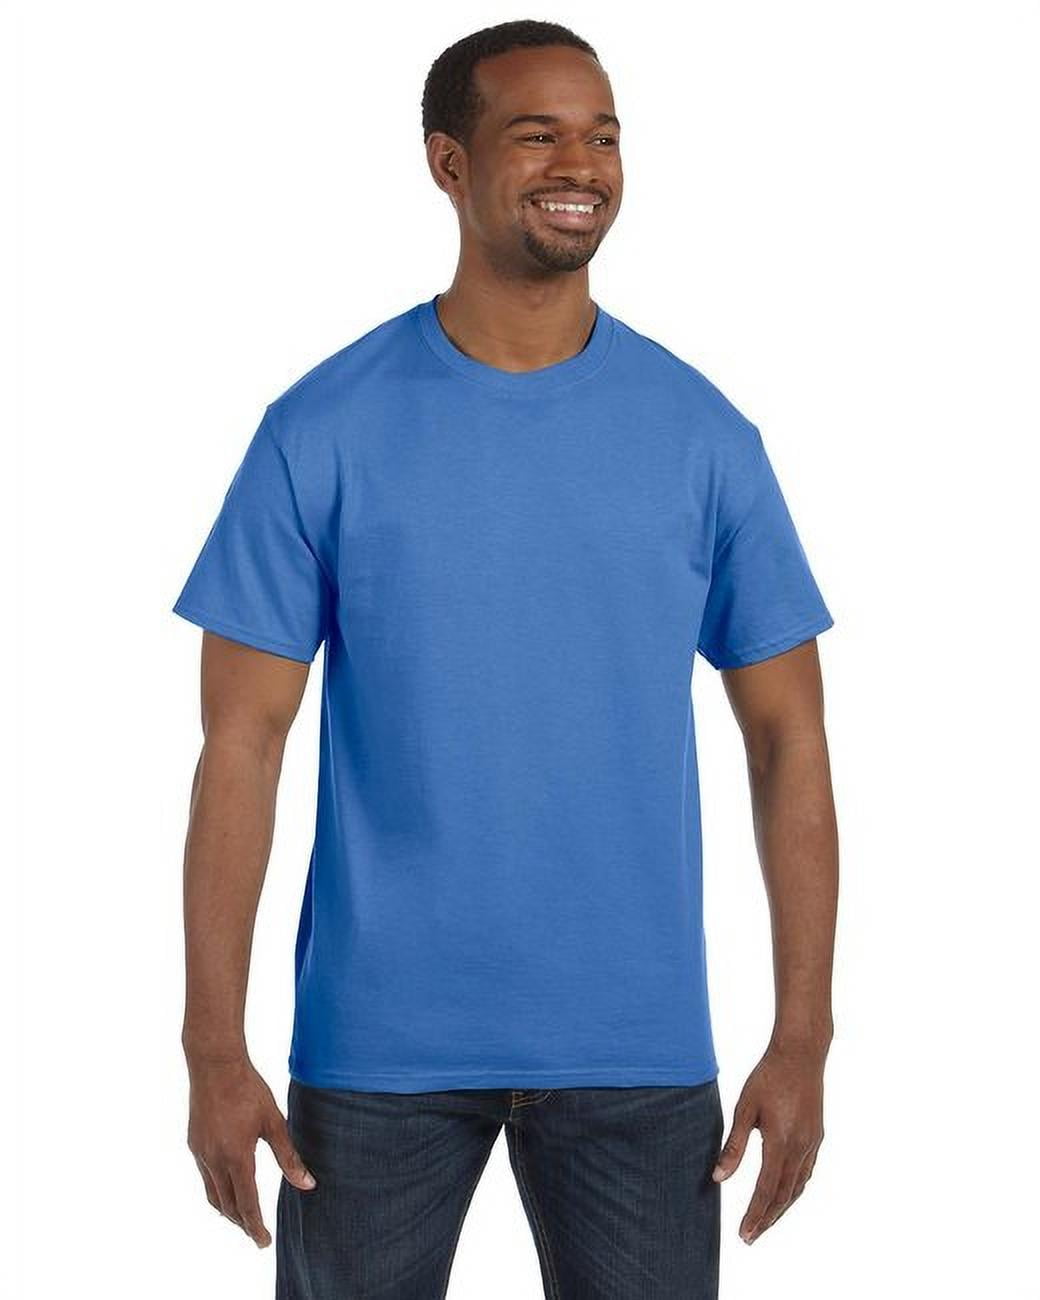 3 Pack Authentic 6 Oz Cotton Crewneck Palace Blue T-Shirt, Size 5XL - Walmart.com